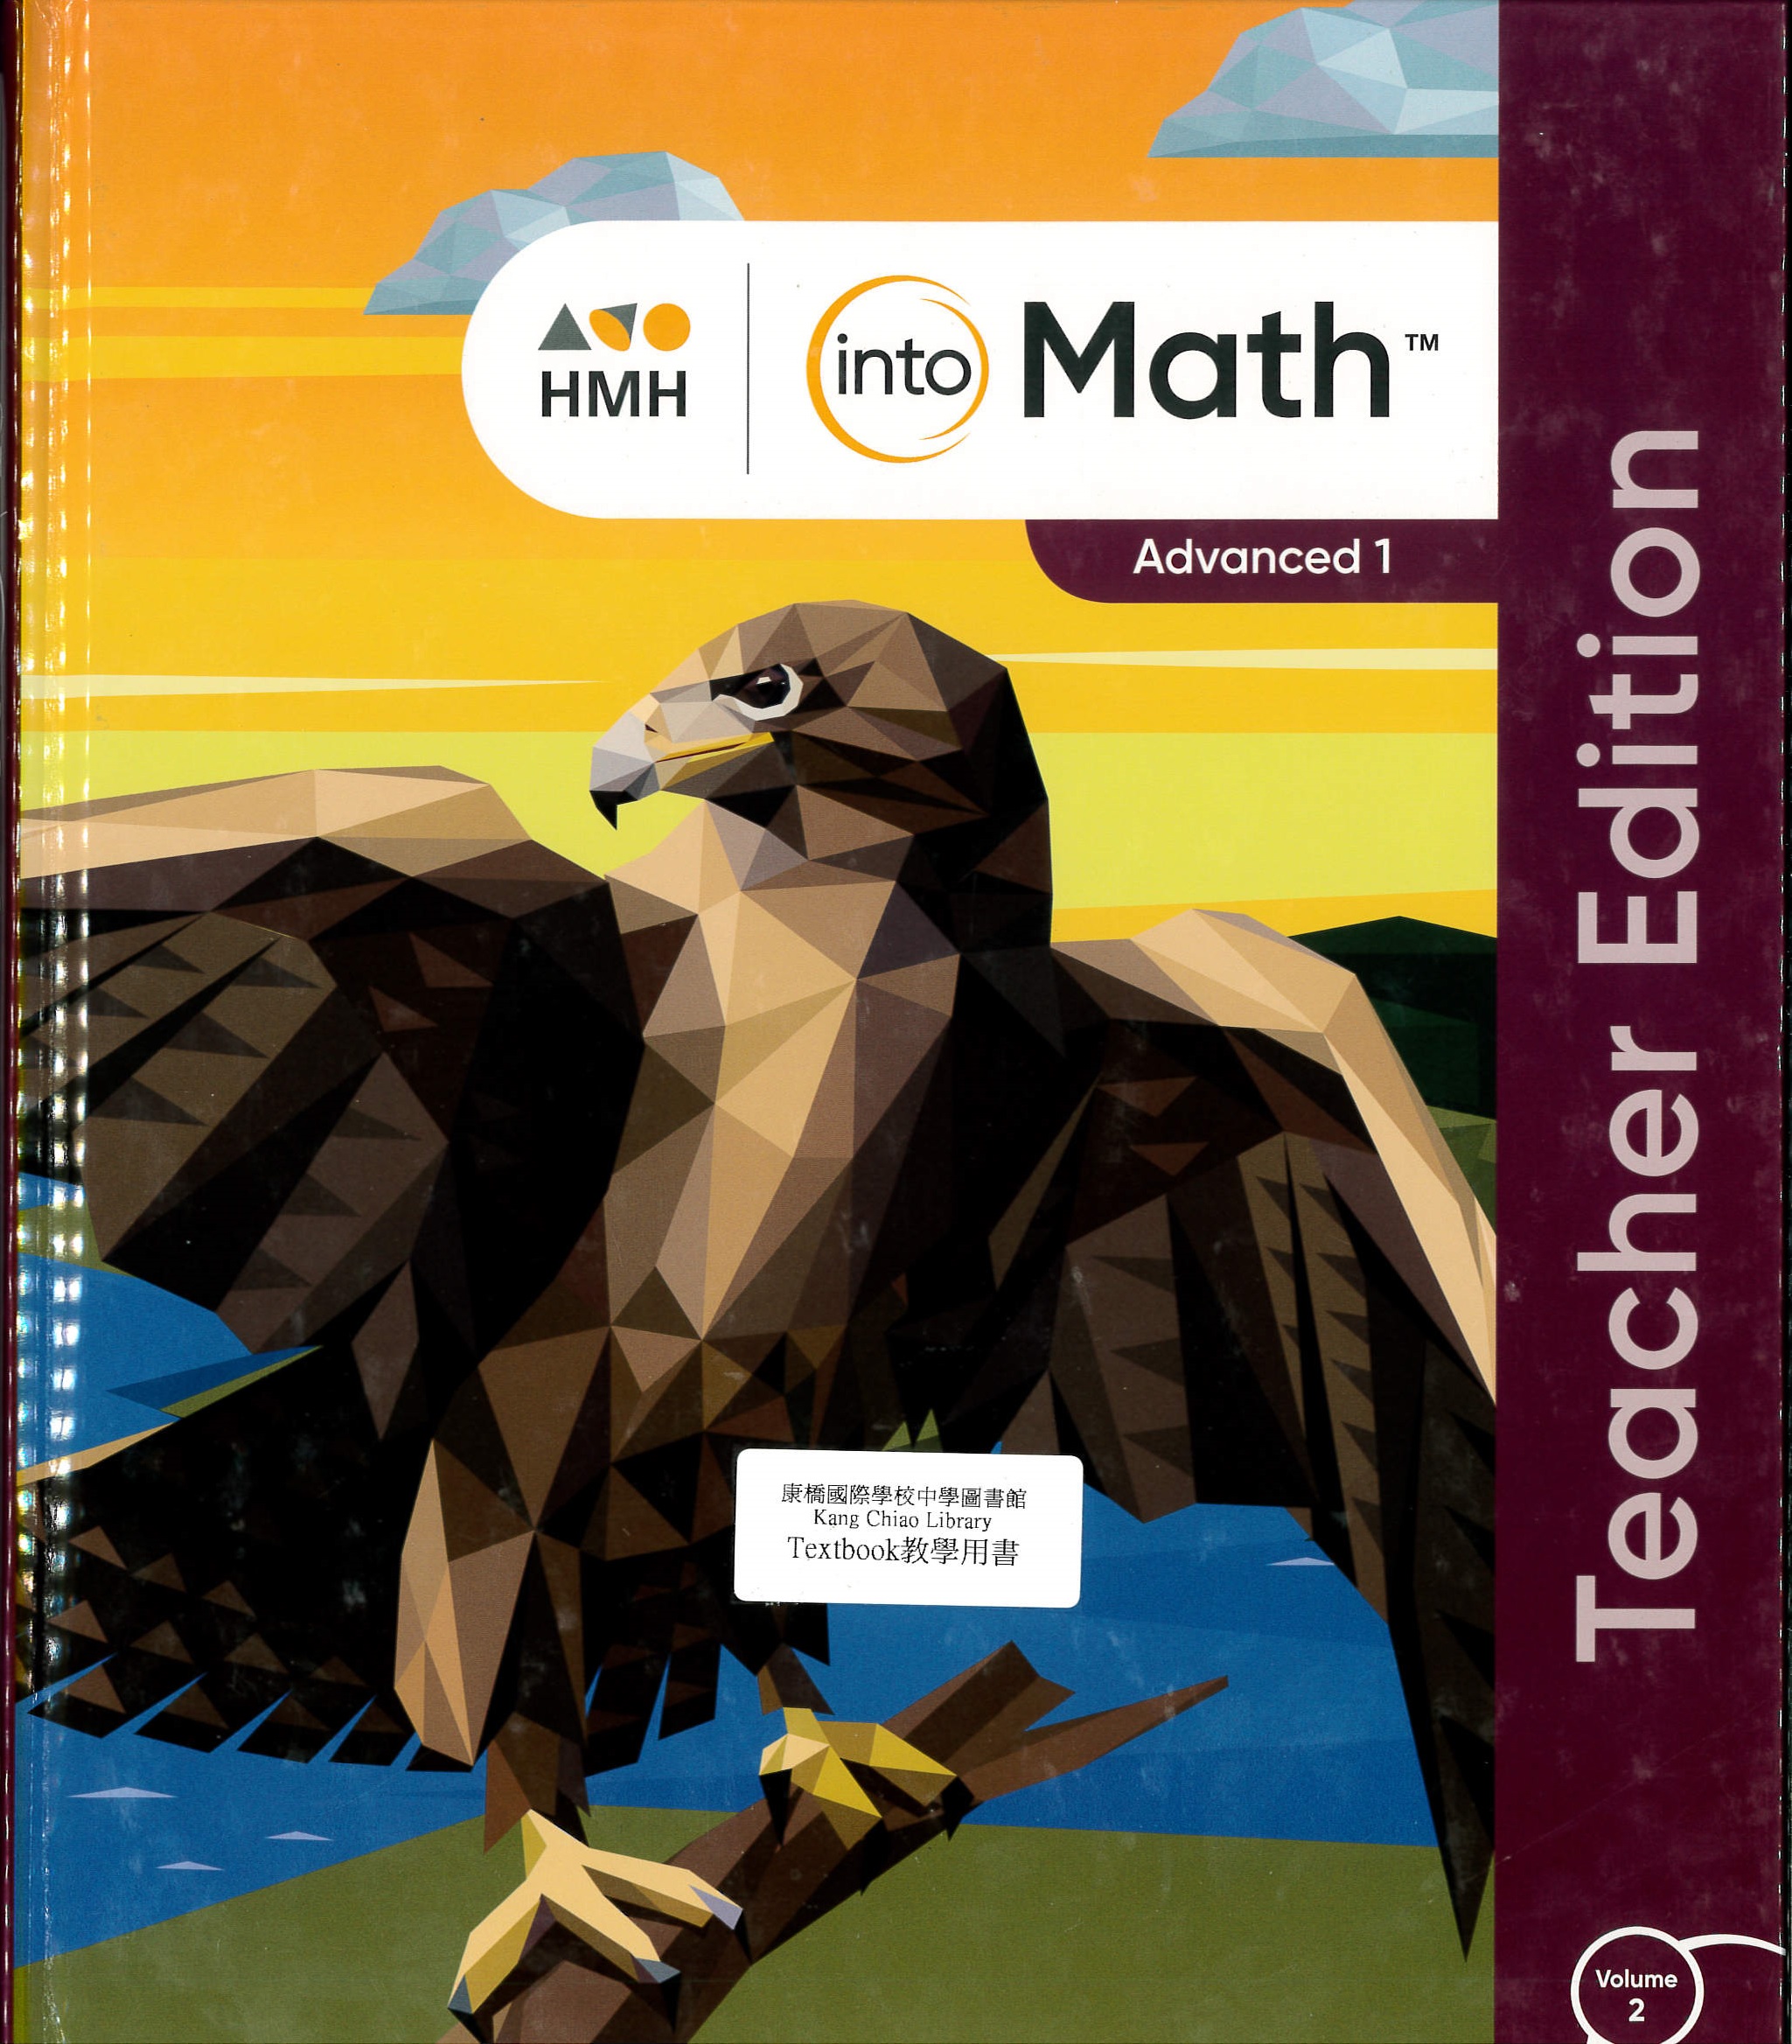 HMH into math advanced 1 [Teacher ed.] : volume 2 : modules 9-18